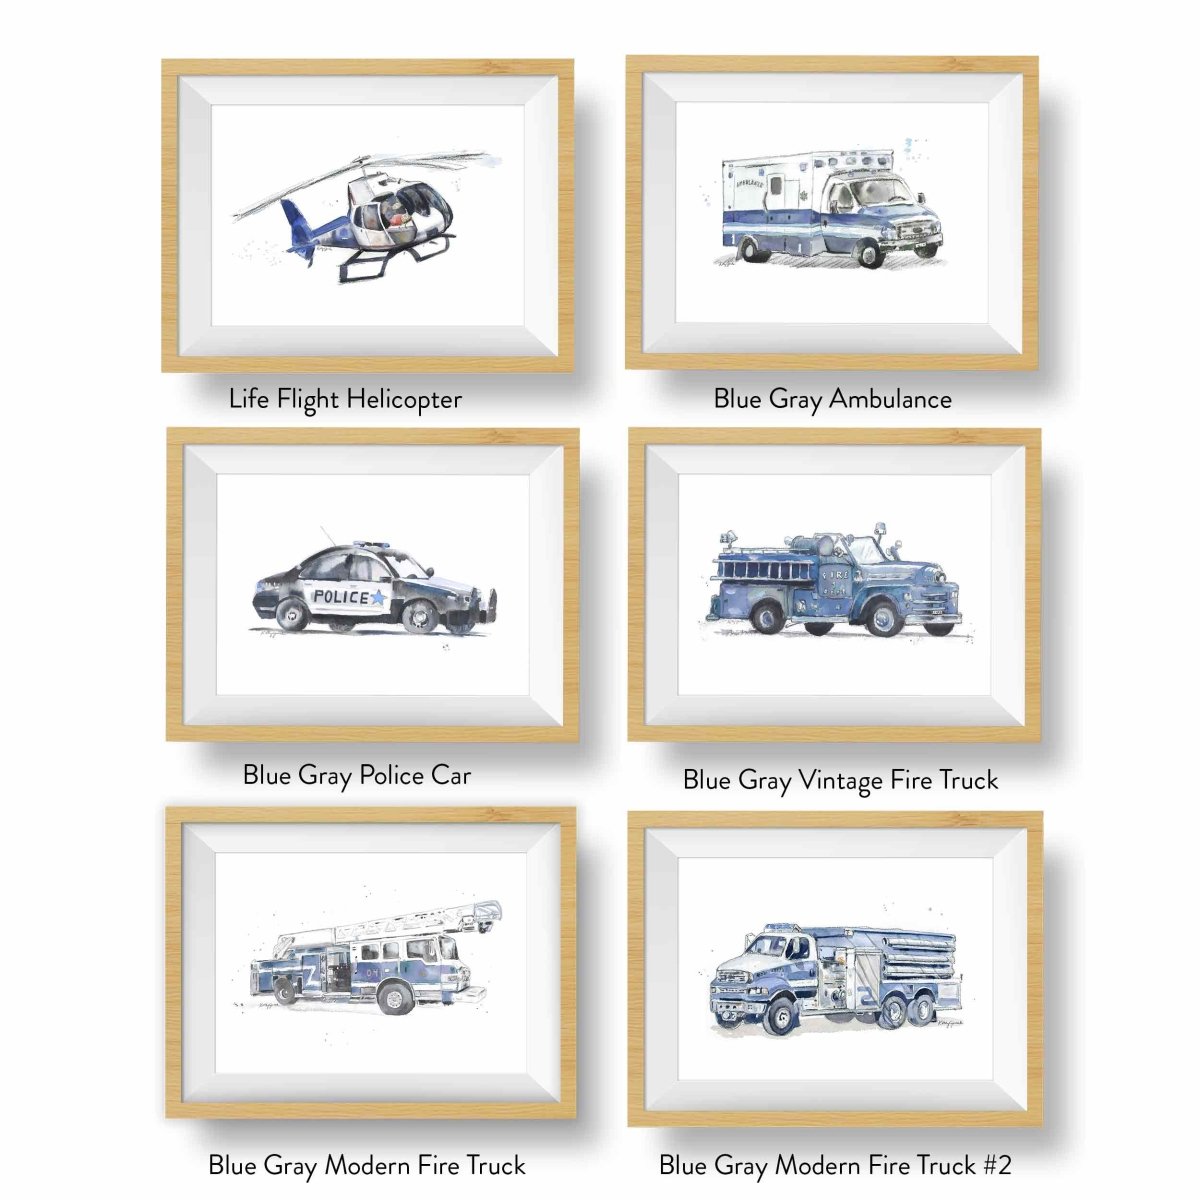 blue gray rescue trucks for kids